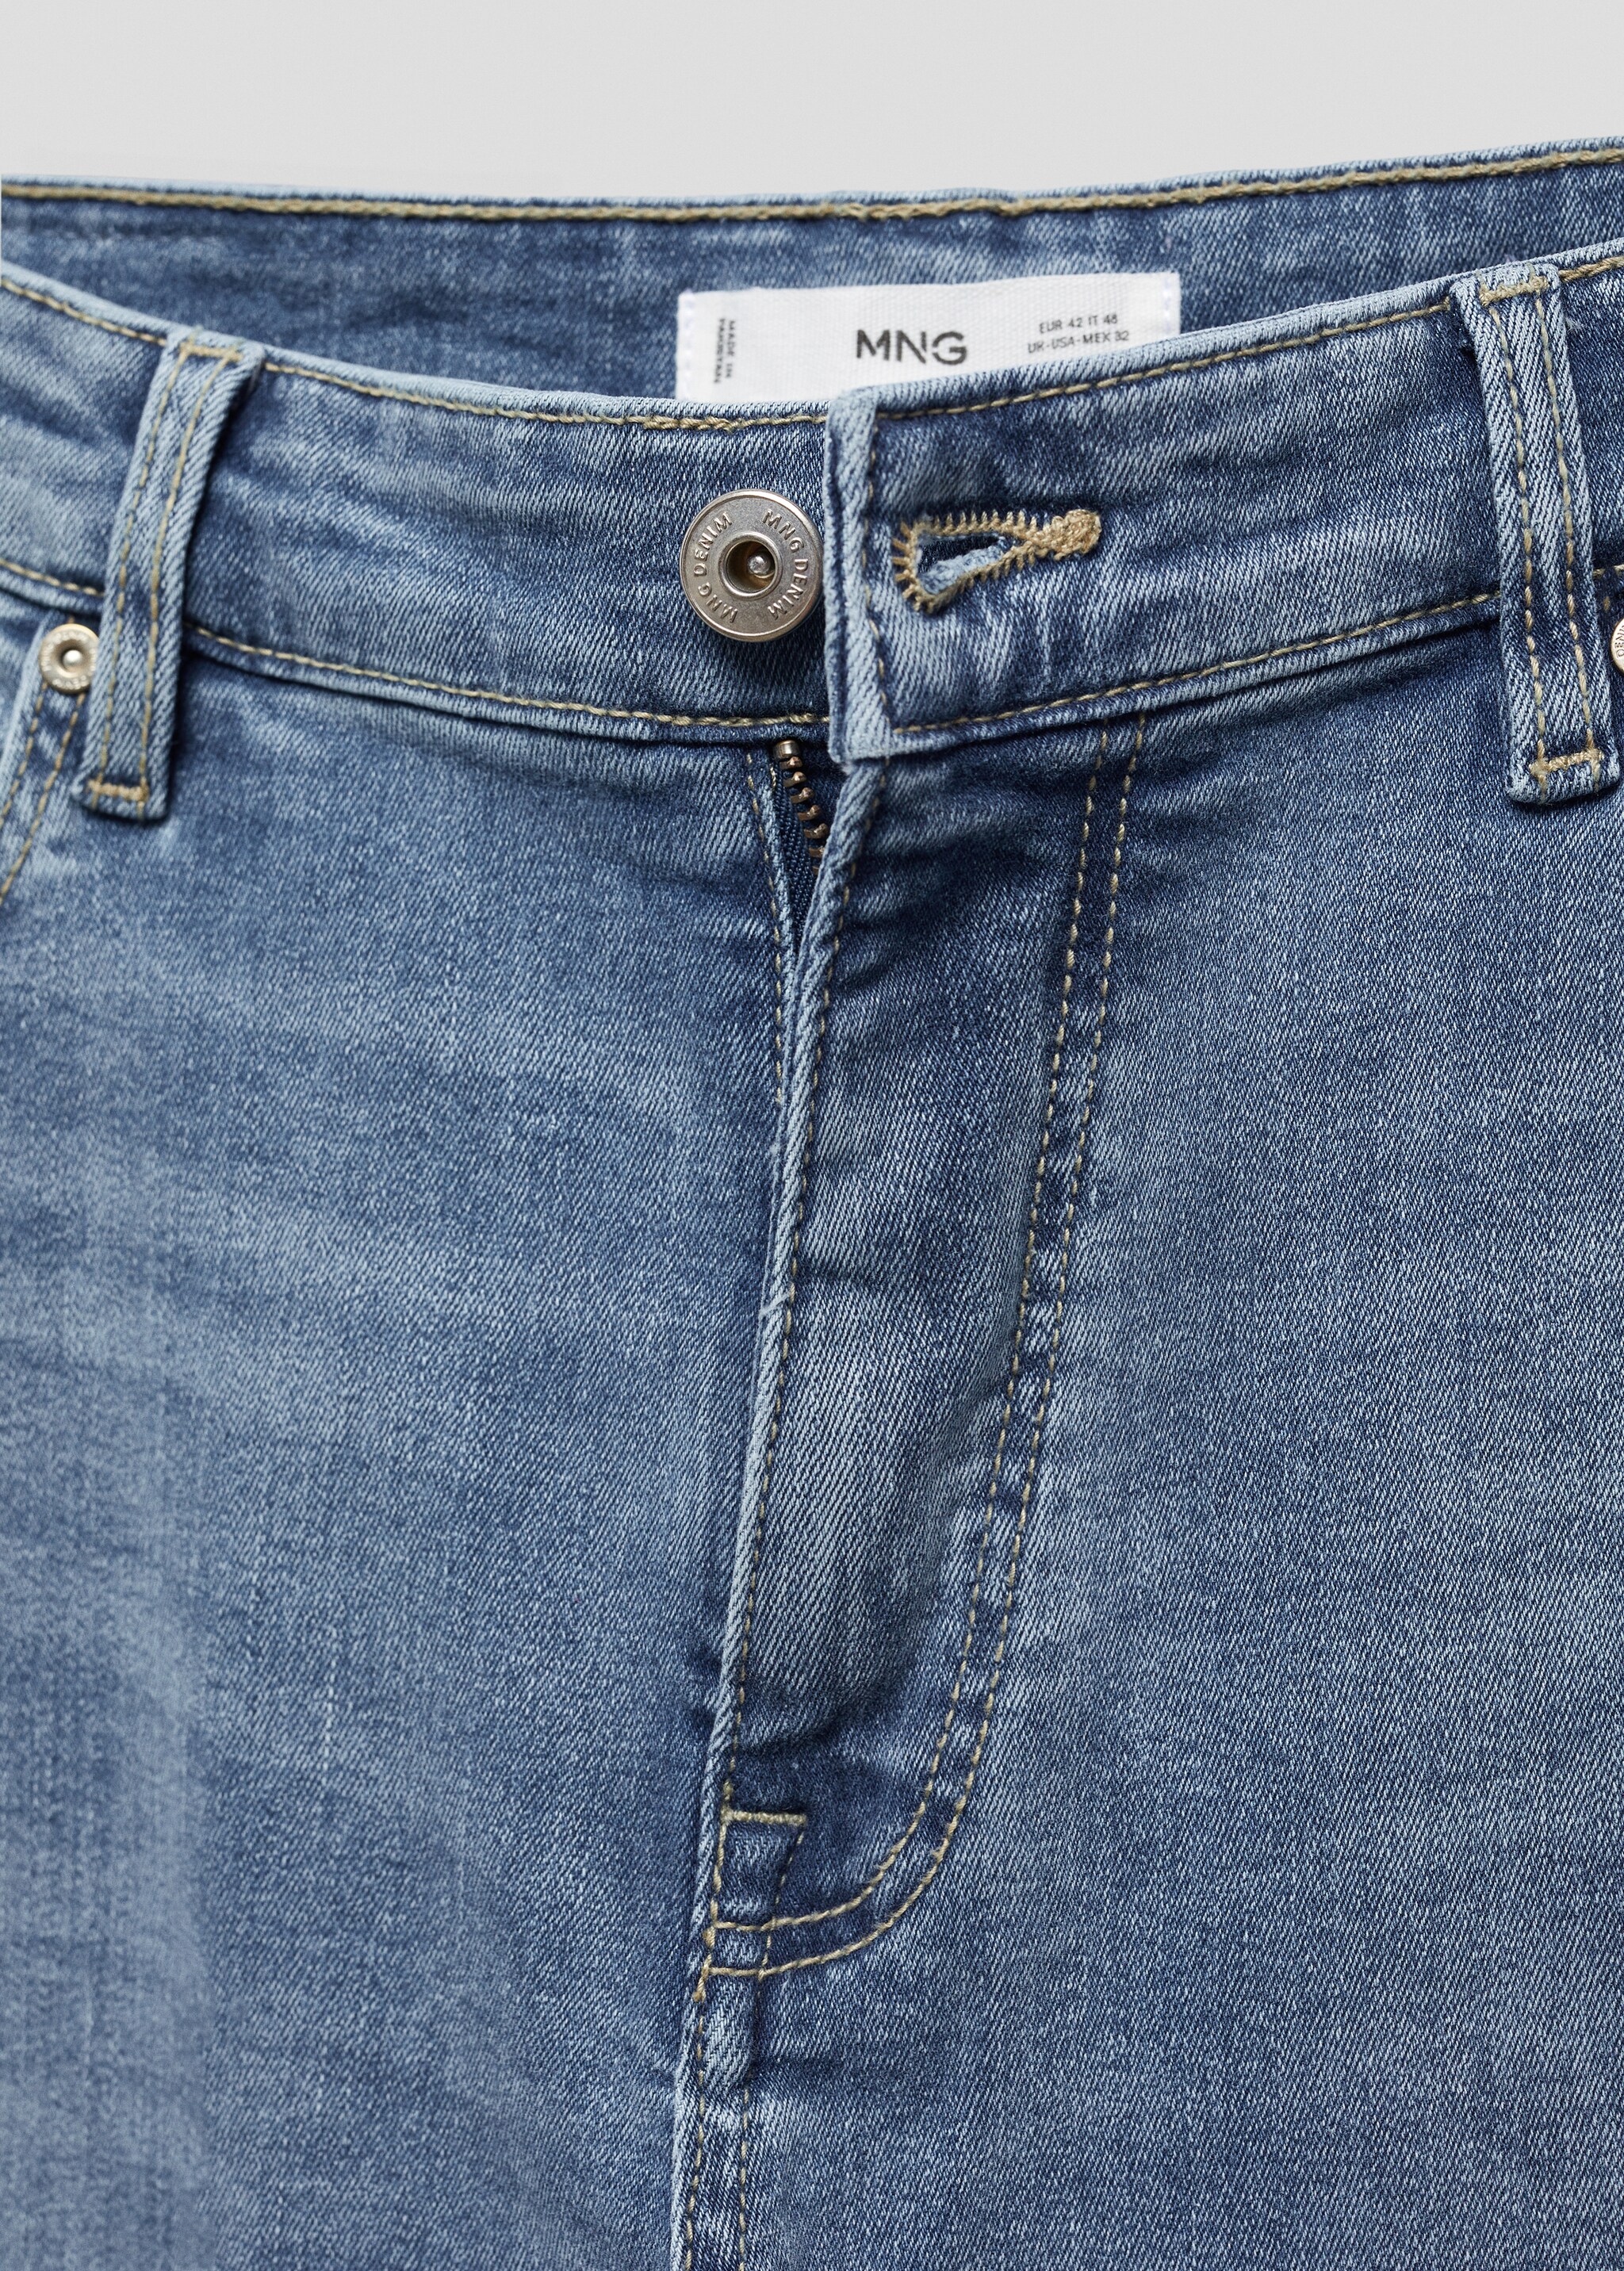 Jeans Jude skinny fit - Detalle del artículo 8